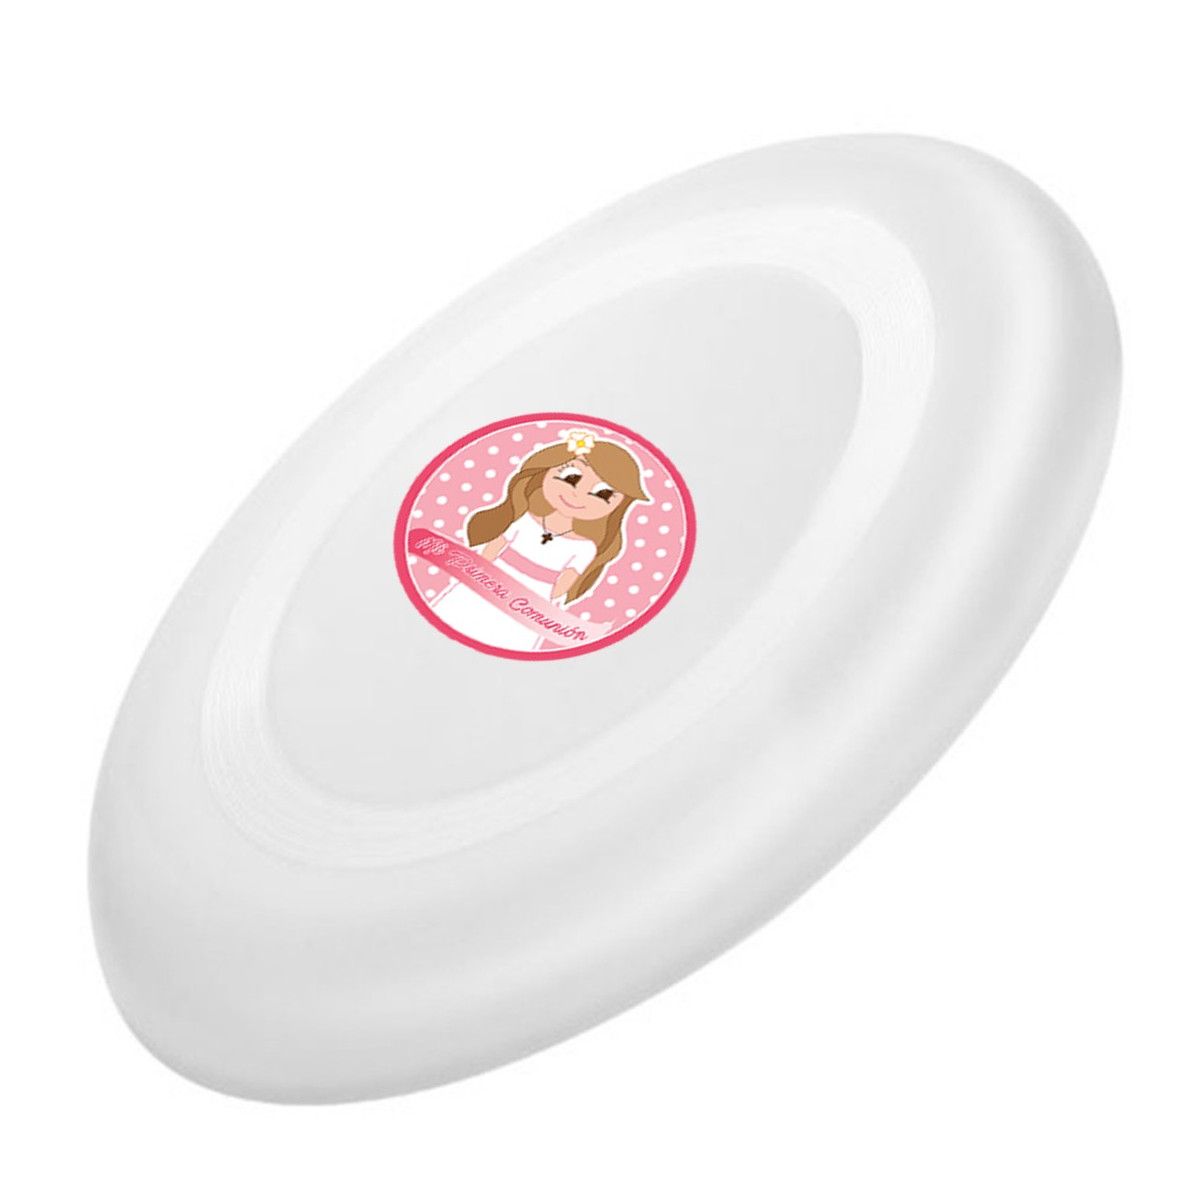 Adesivo frisbee branco para crianças com etiqueta de comunhão